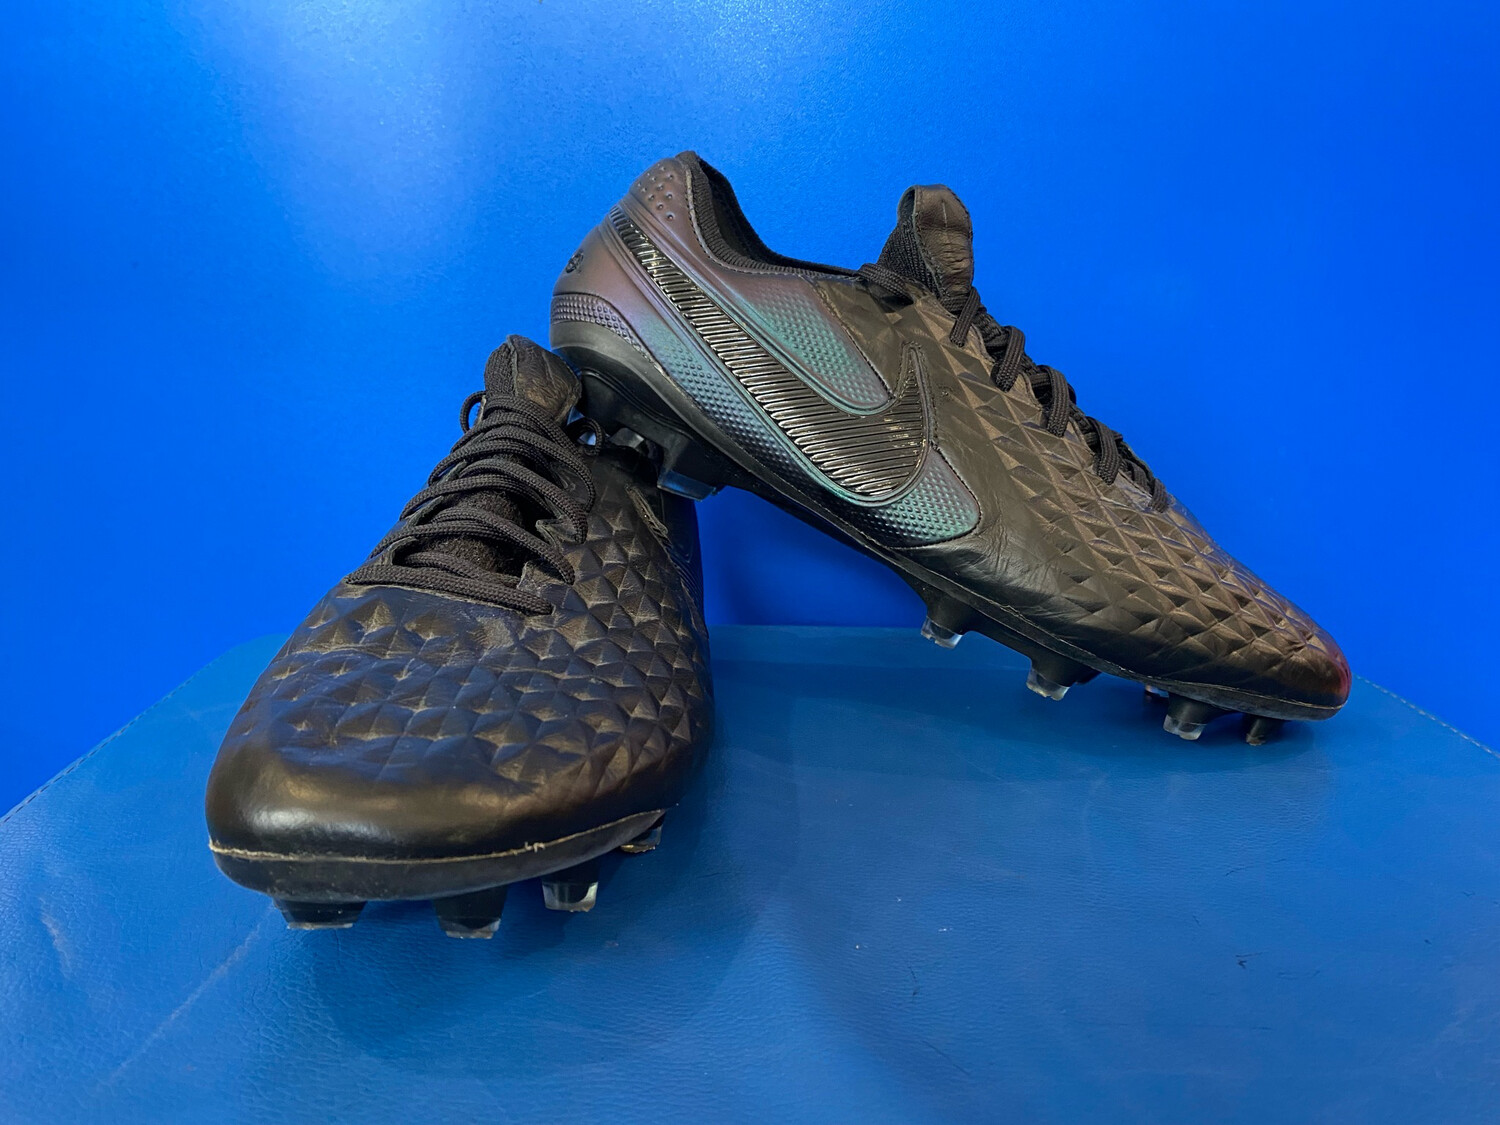 Nike Tiempo Nike Grip Football Boots (Near New) (EC1998) US10.5